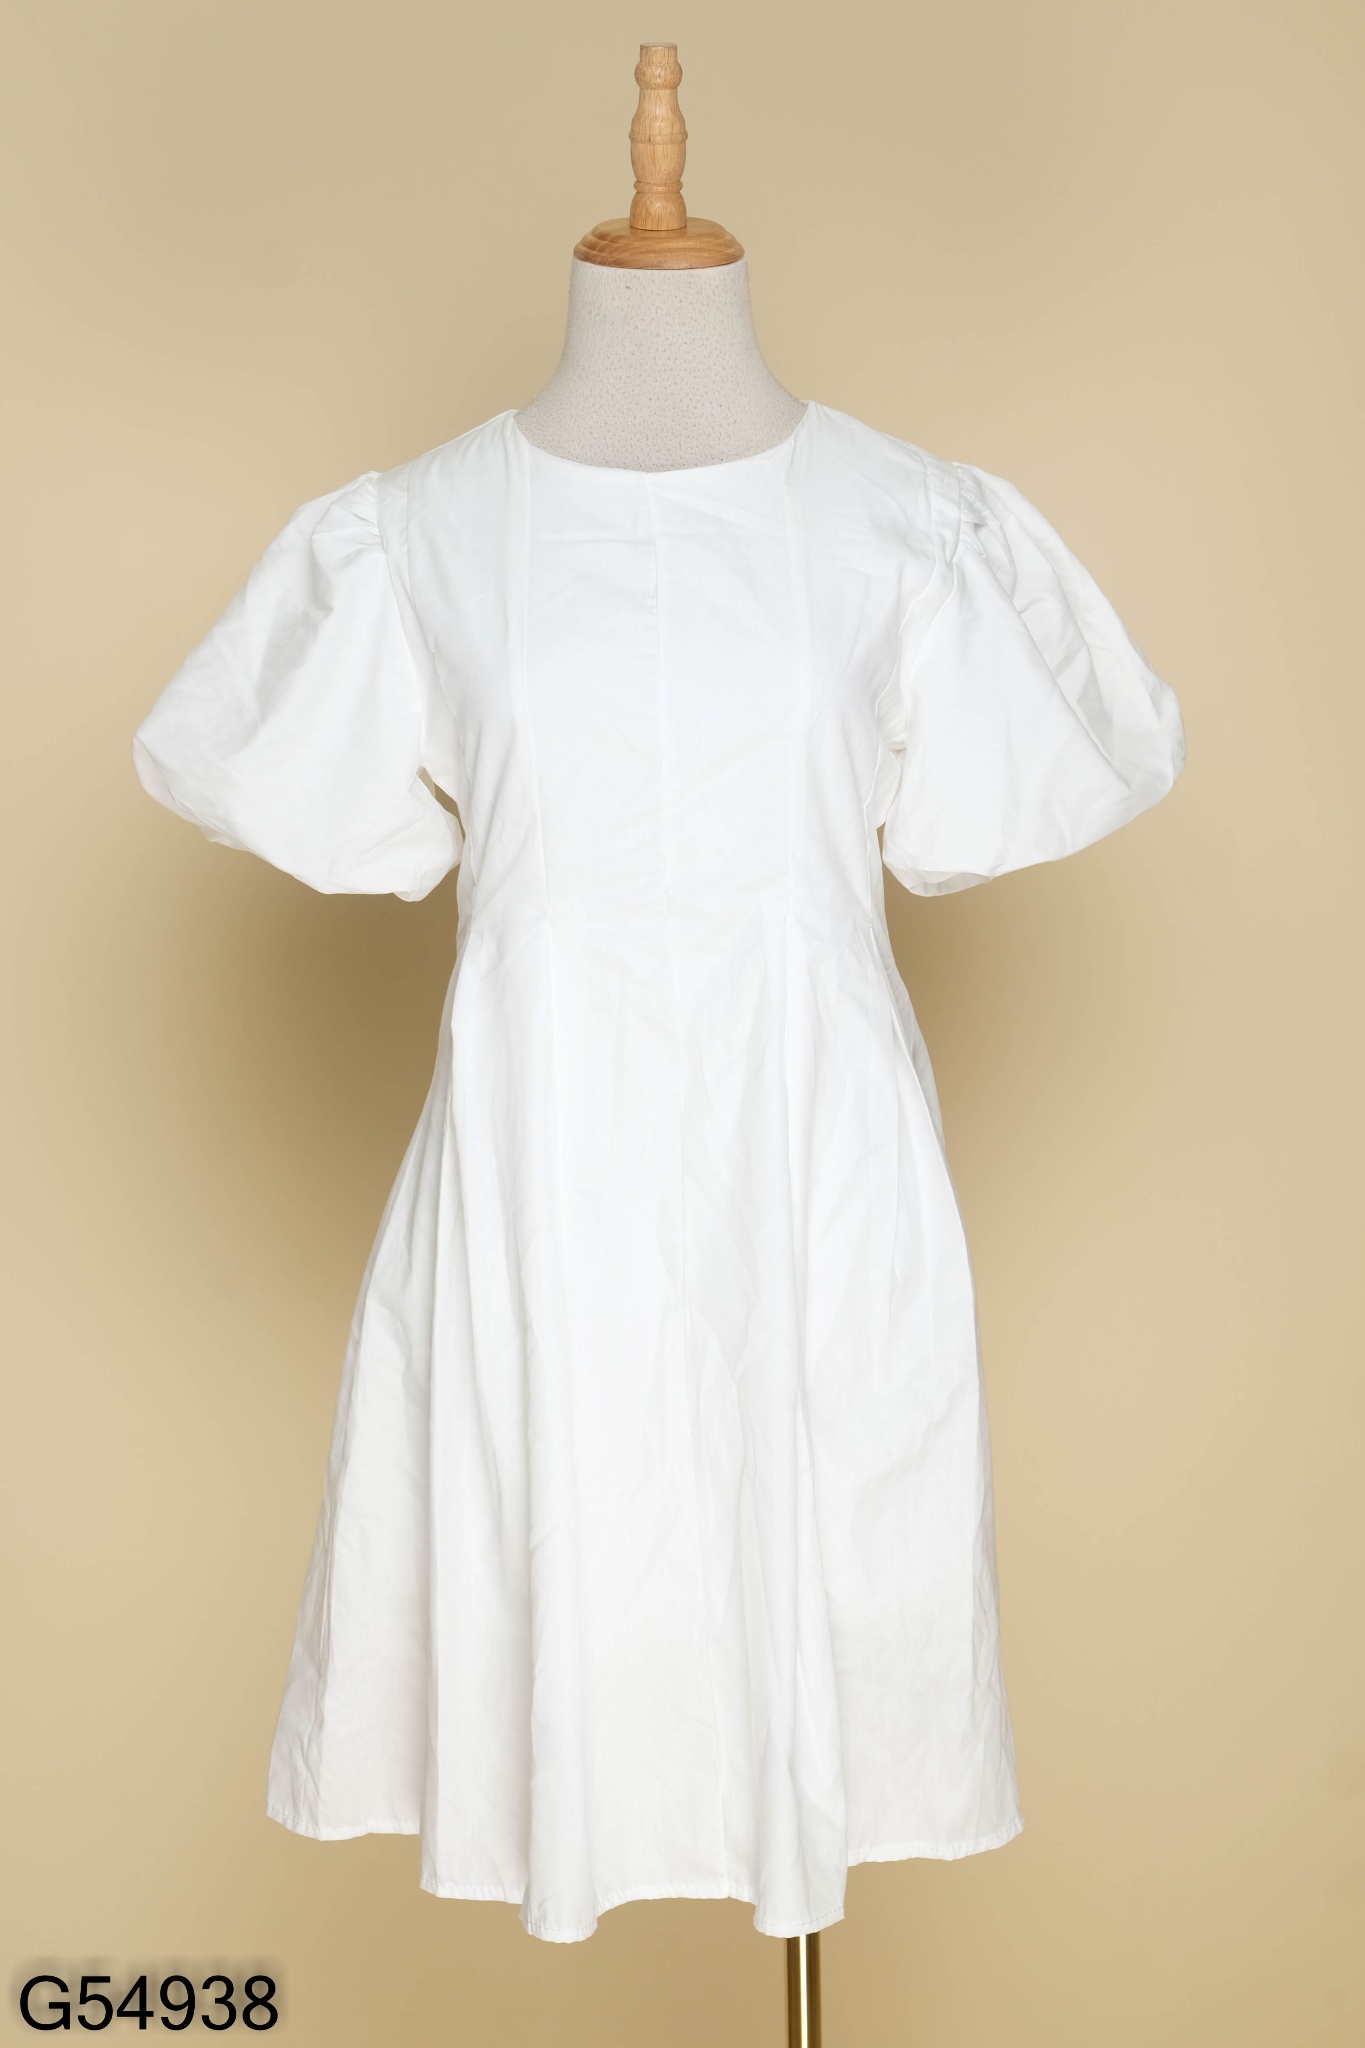 Váy đầm trắng - item thời trang không nhuốm màu thời gian